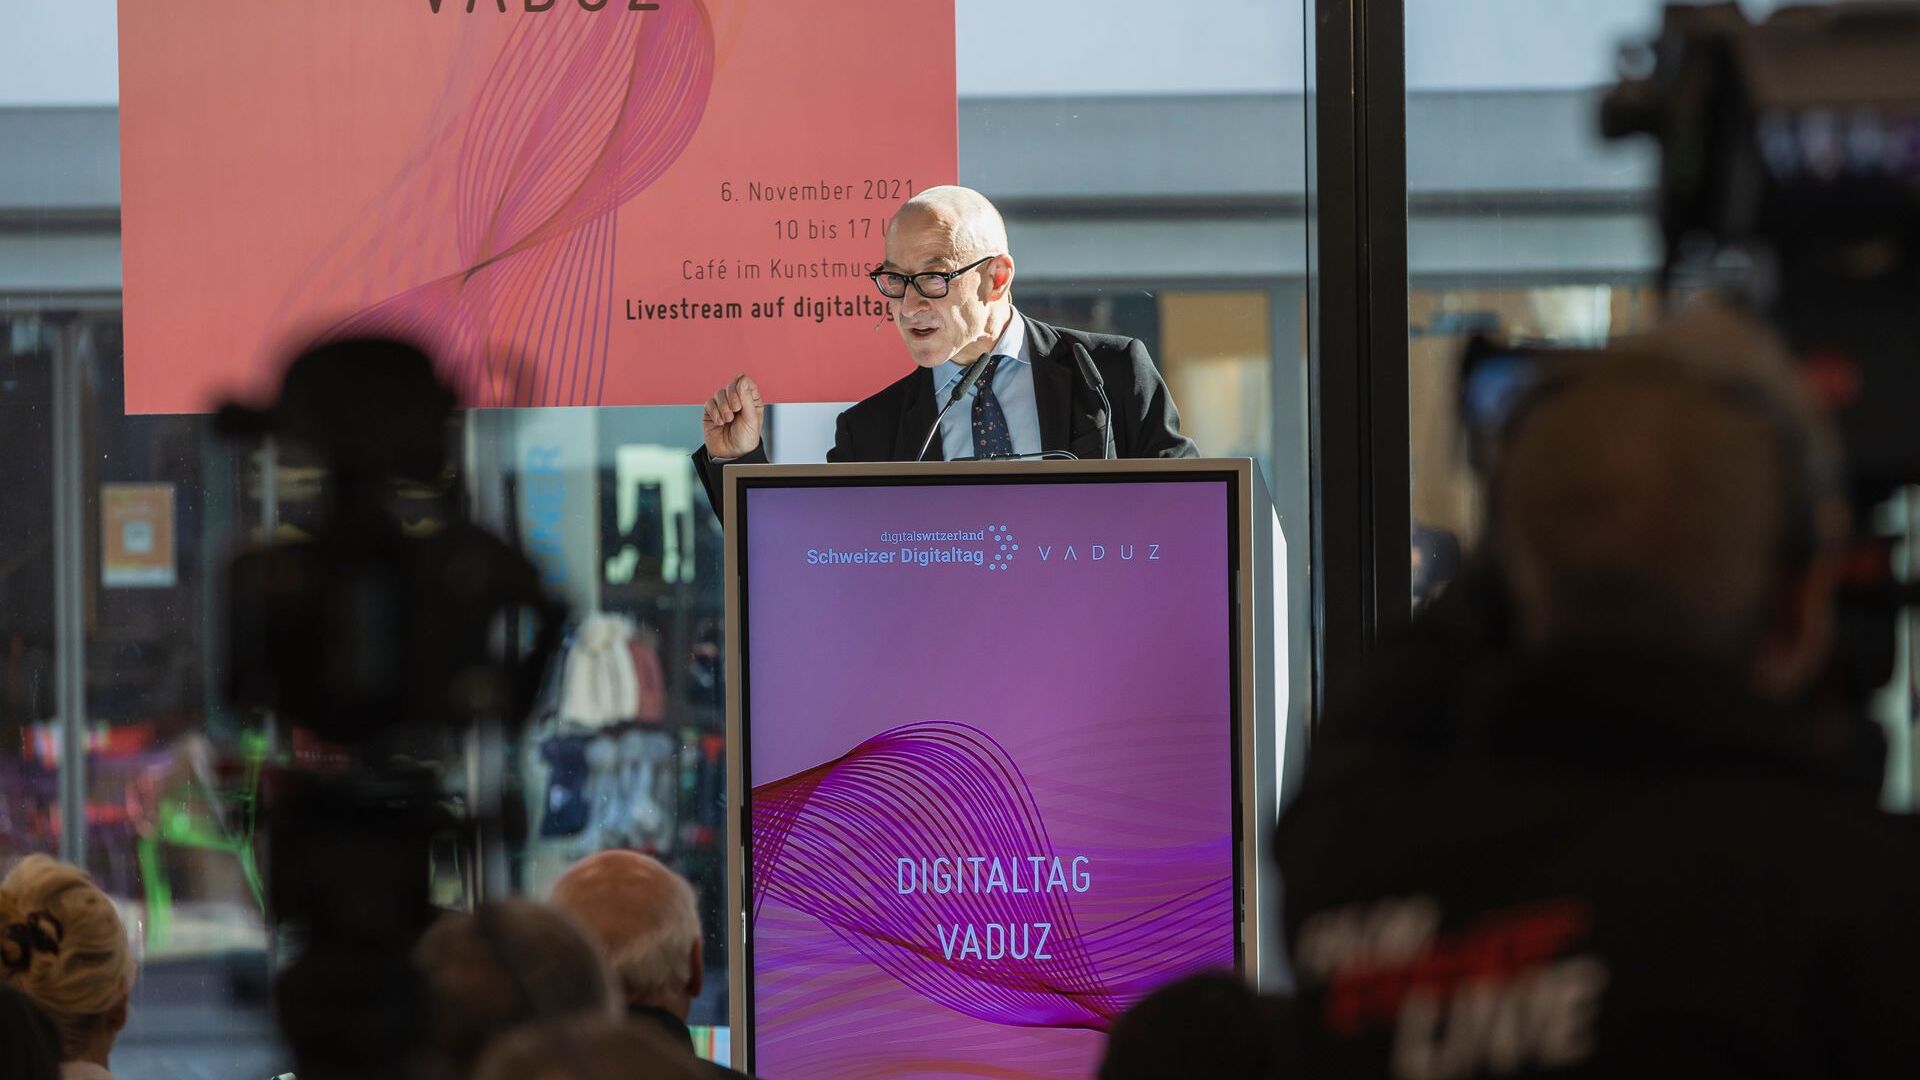 "Digitaltag Vaduz" ซึ่งได้รับการต้อนรับจาก Kunstmuseum เมืองหลวงของราชรัฐลิกเตนสไตน์ในวันเสาร์ที่ 6 พฤศจิกายน 2021 กระตุ้นความกระตือรือร้นของสาธารณชนและผู้พูดโดยเปรียบเทียบกับ "Swiss Digital Day" ของวันรุ่งขึ้น 10: การแทรกแซงของ David Bosshart นักอนาคตศาสตร์และผู้เชี่ยวชาญด้านเทรนด์ชาวเยอรมัน